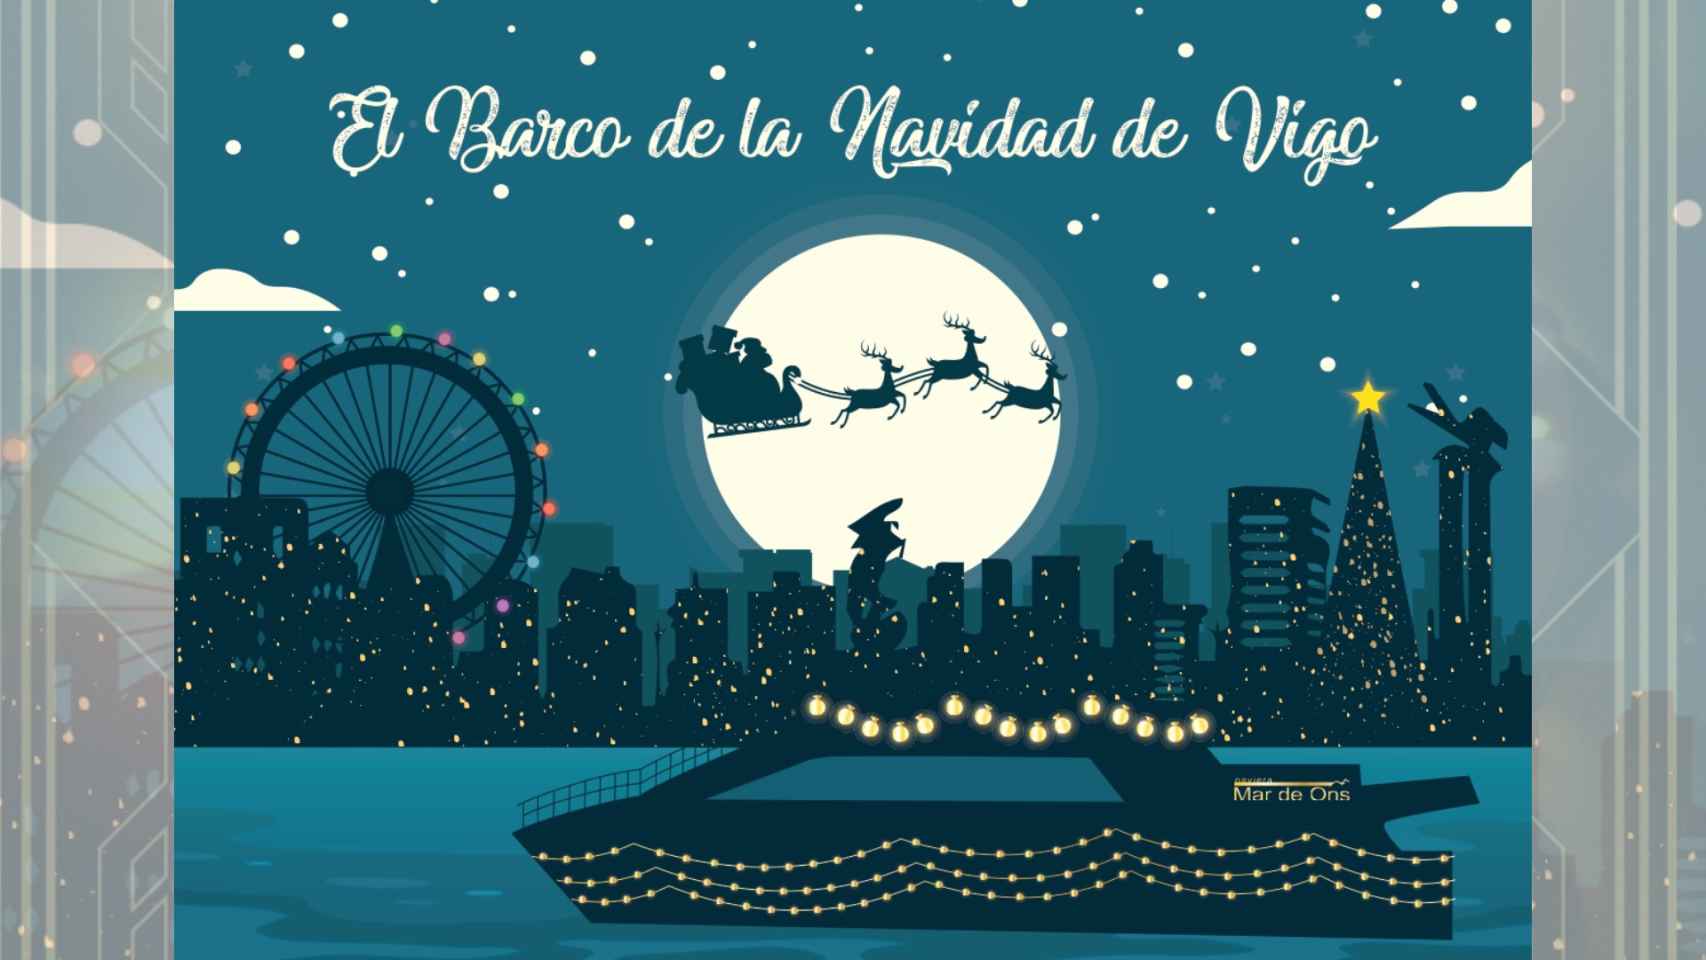 Naviera Mar de Ons se suma a las actividades de la Navidad de Vigo